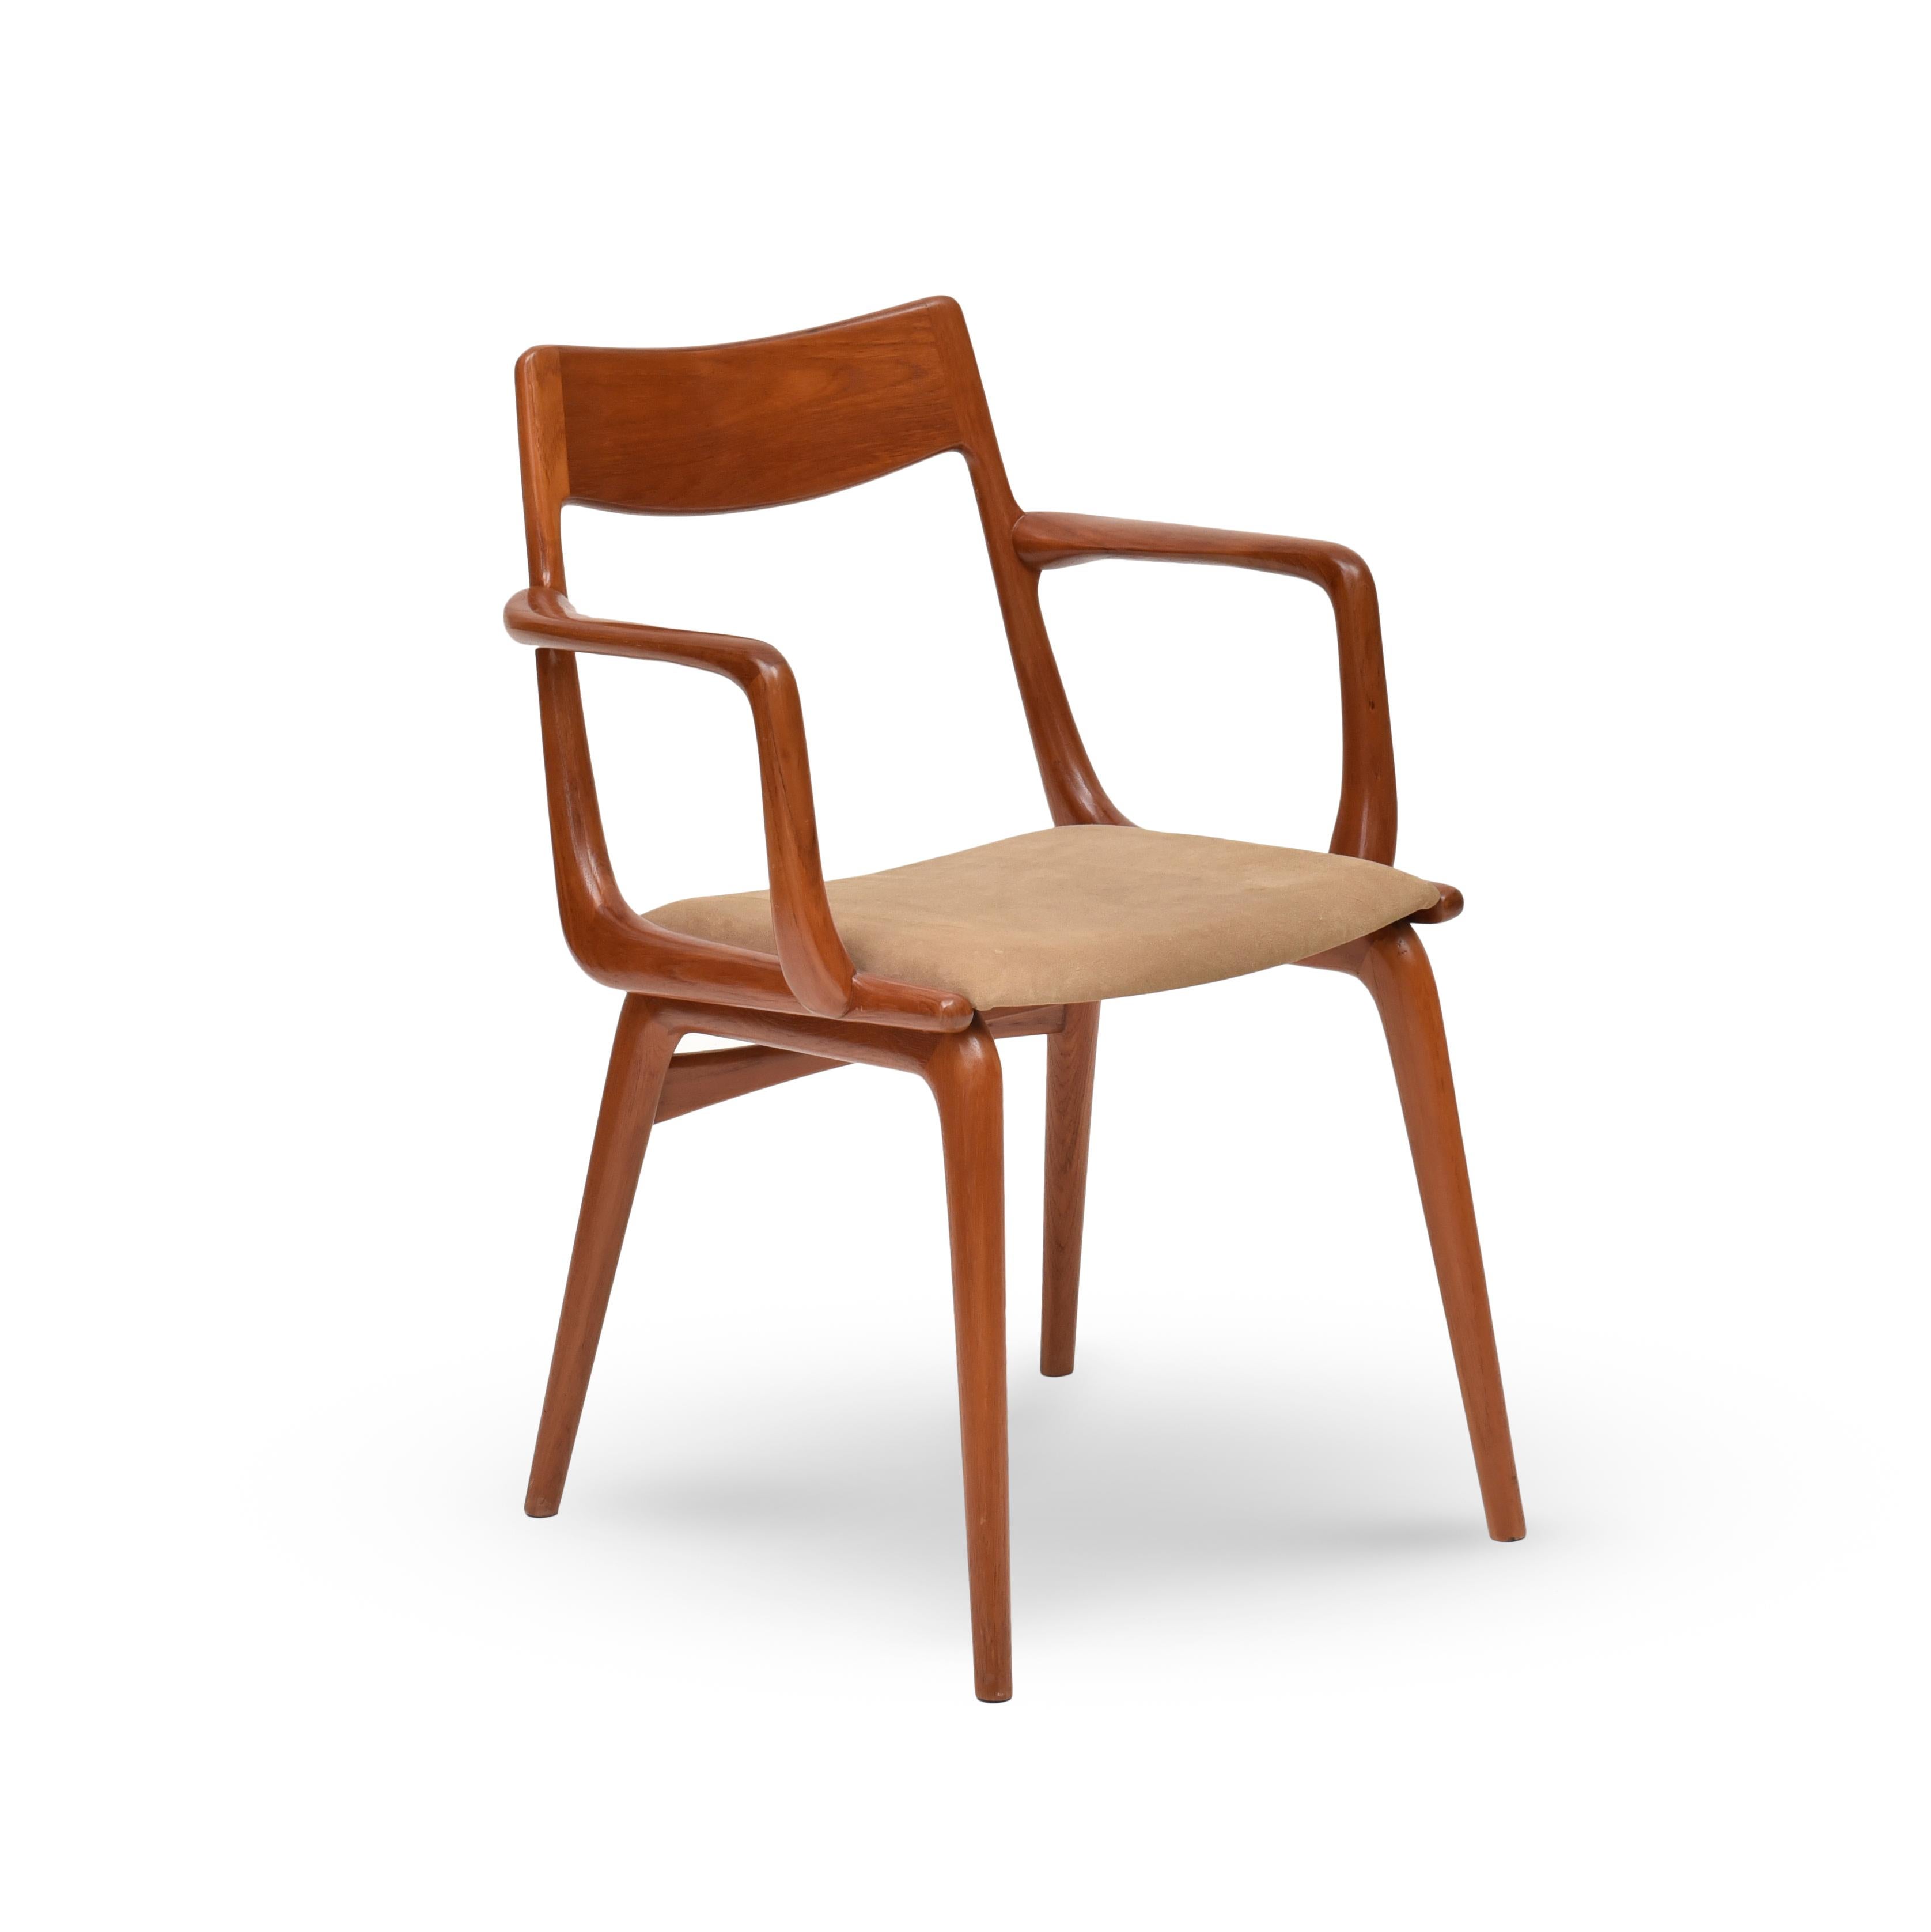 Wood Boomerang Chair in Salmwood by Alfred Christensen for Slagelse Møbelværk. 